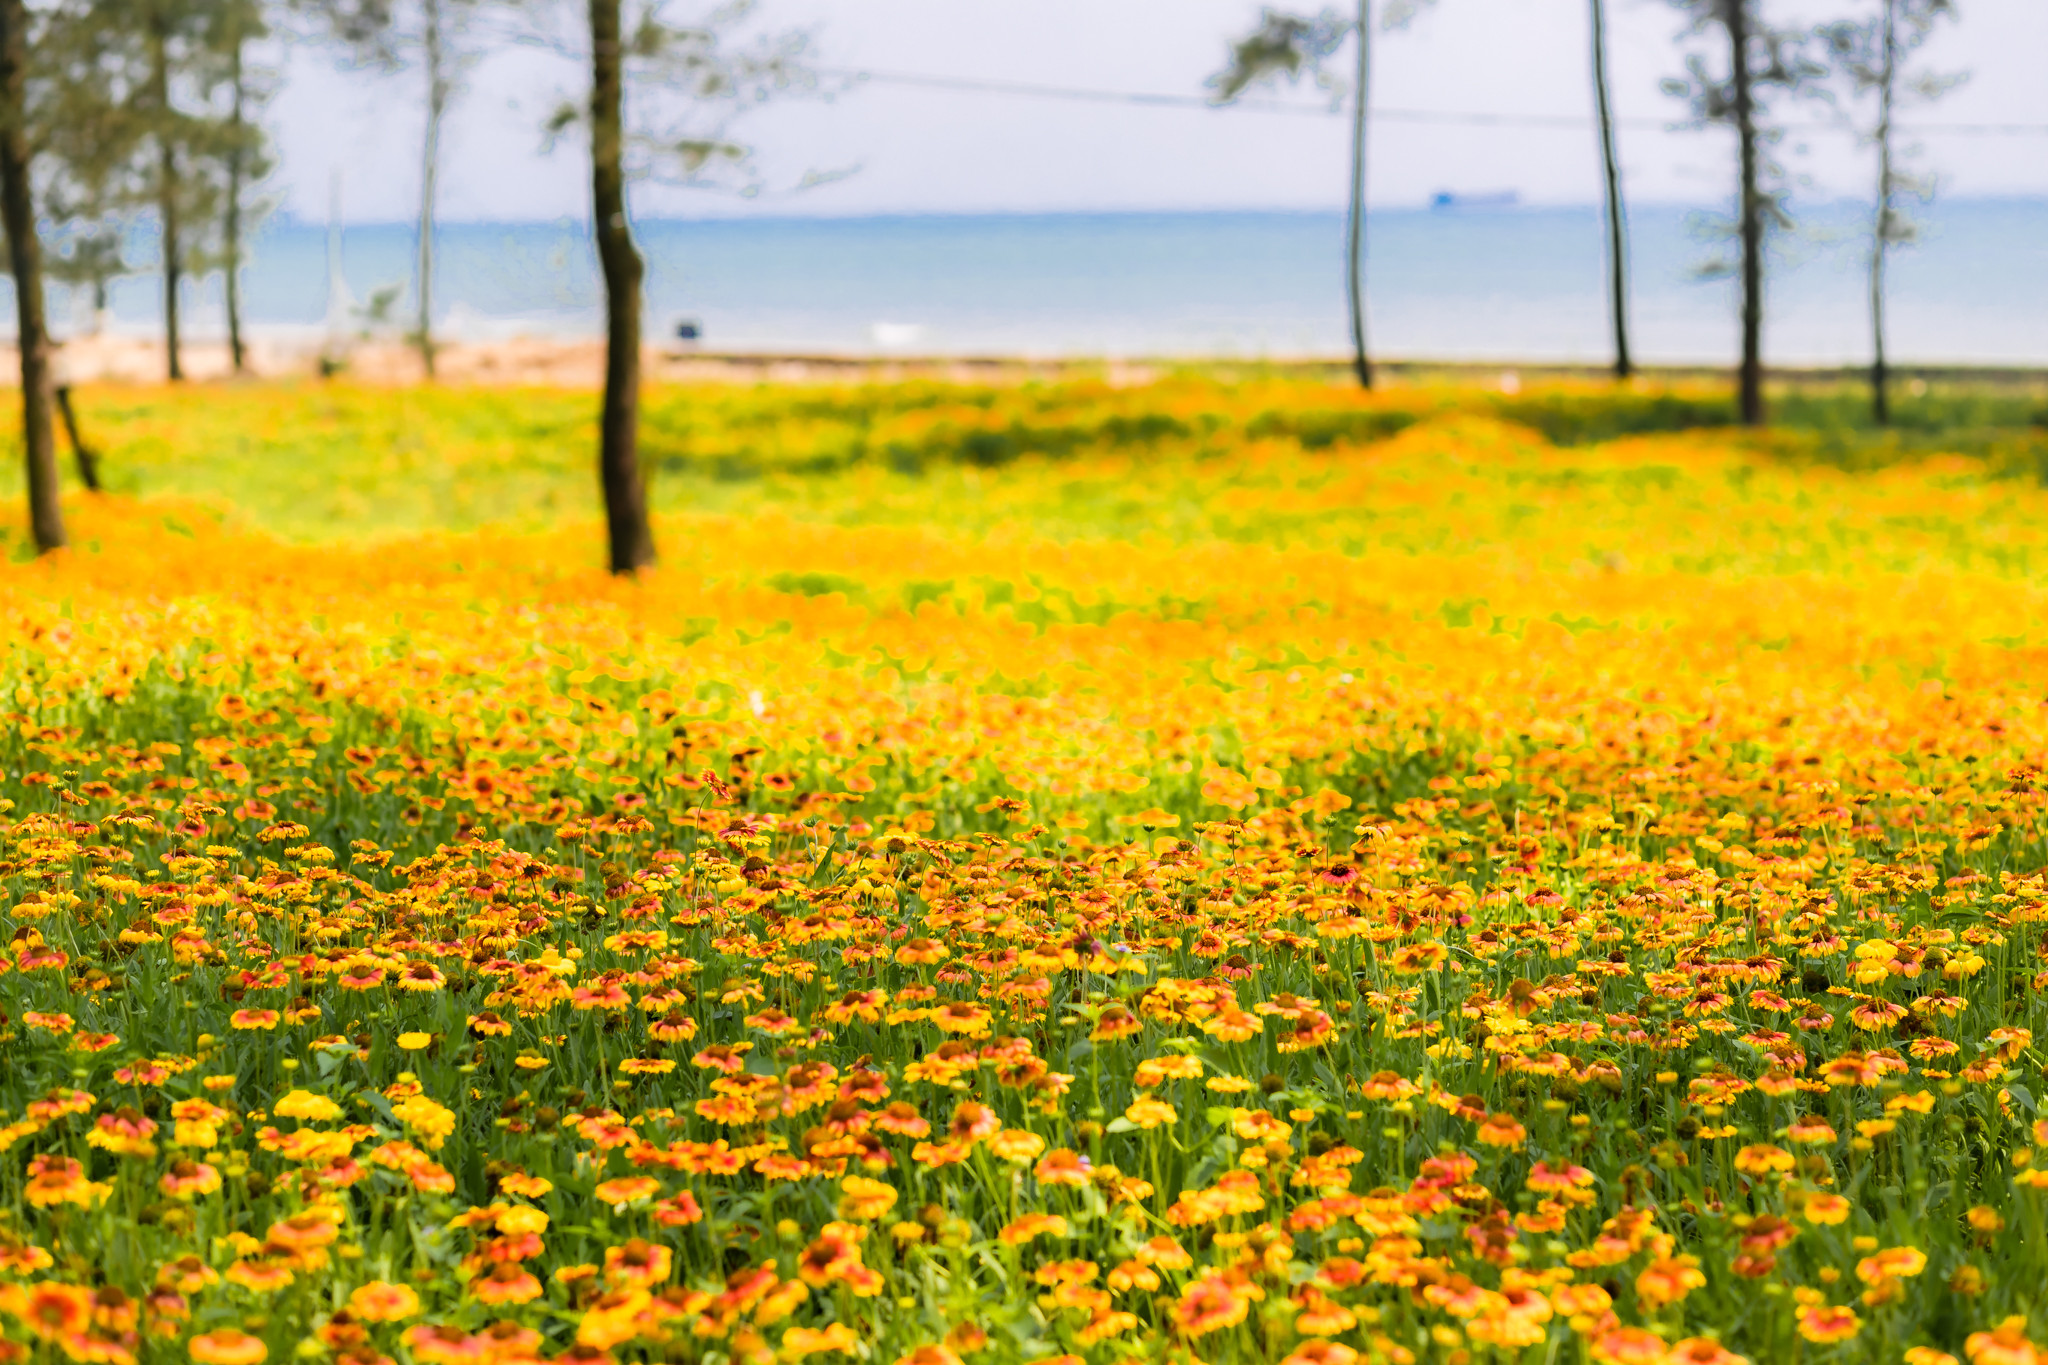 Hoa cúc biển là loại hoa đặc trưng của Cửa Lò. Năm nay chính quyền thị xã đã chính thức đưa loài hoa này làm biểu tượng du lịch của phố biển xinh đẹp bậc nhất miền Trung. Ảnh: Đức Anh